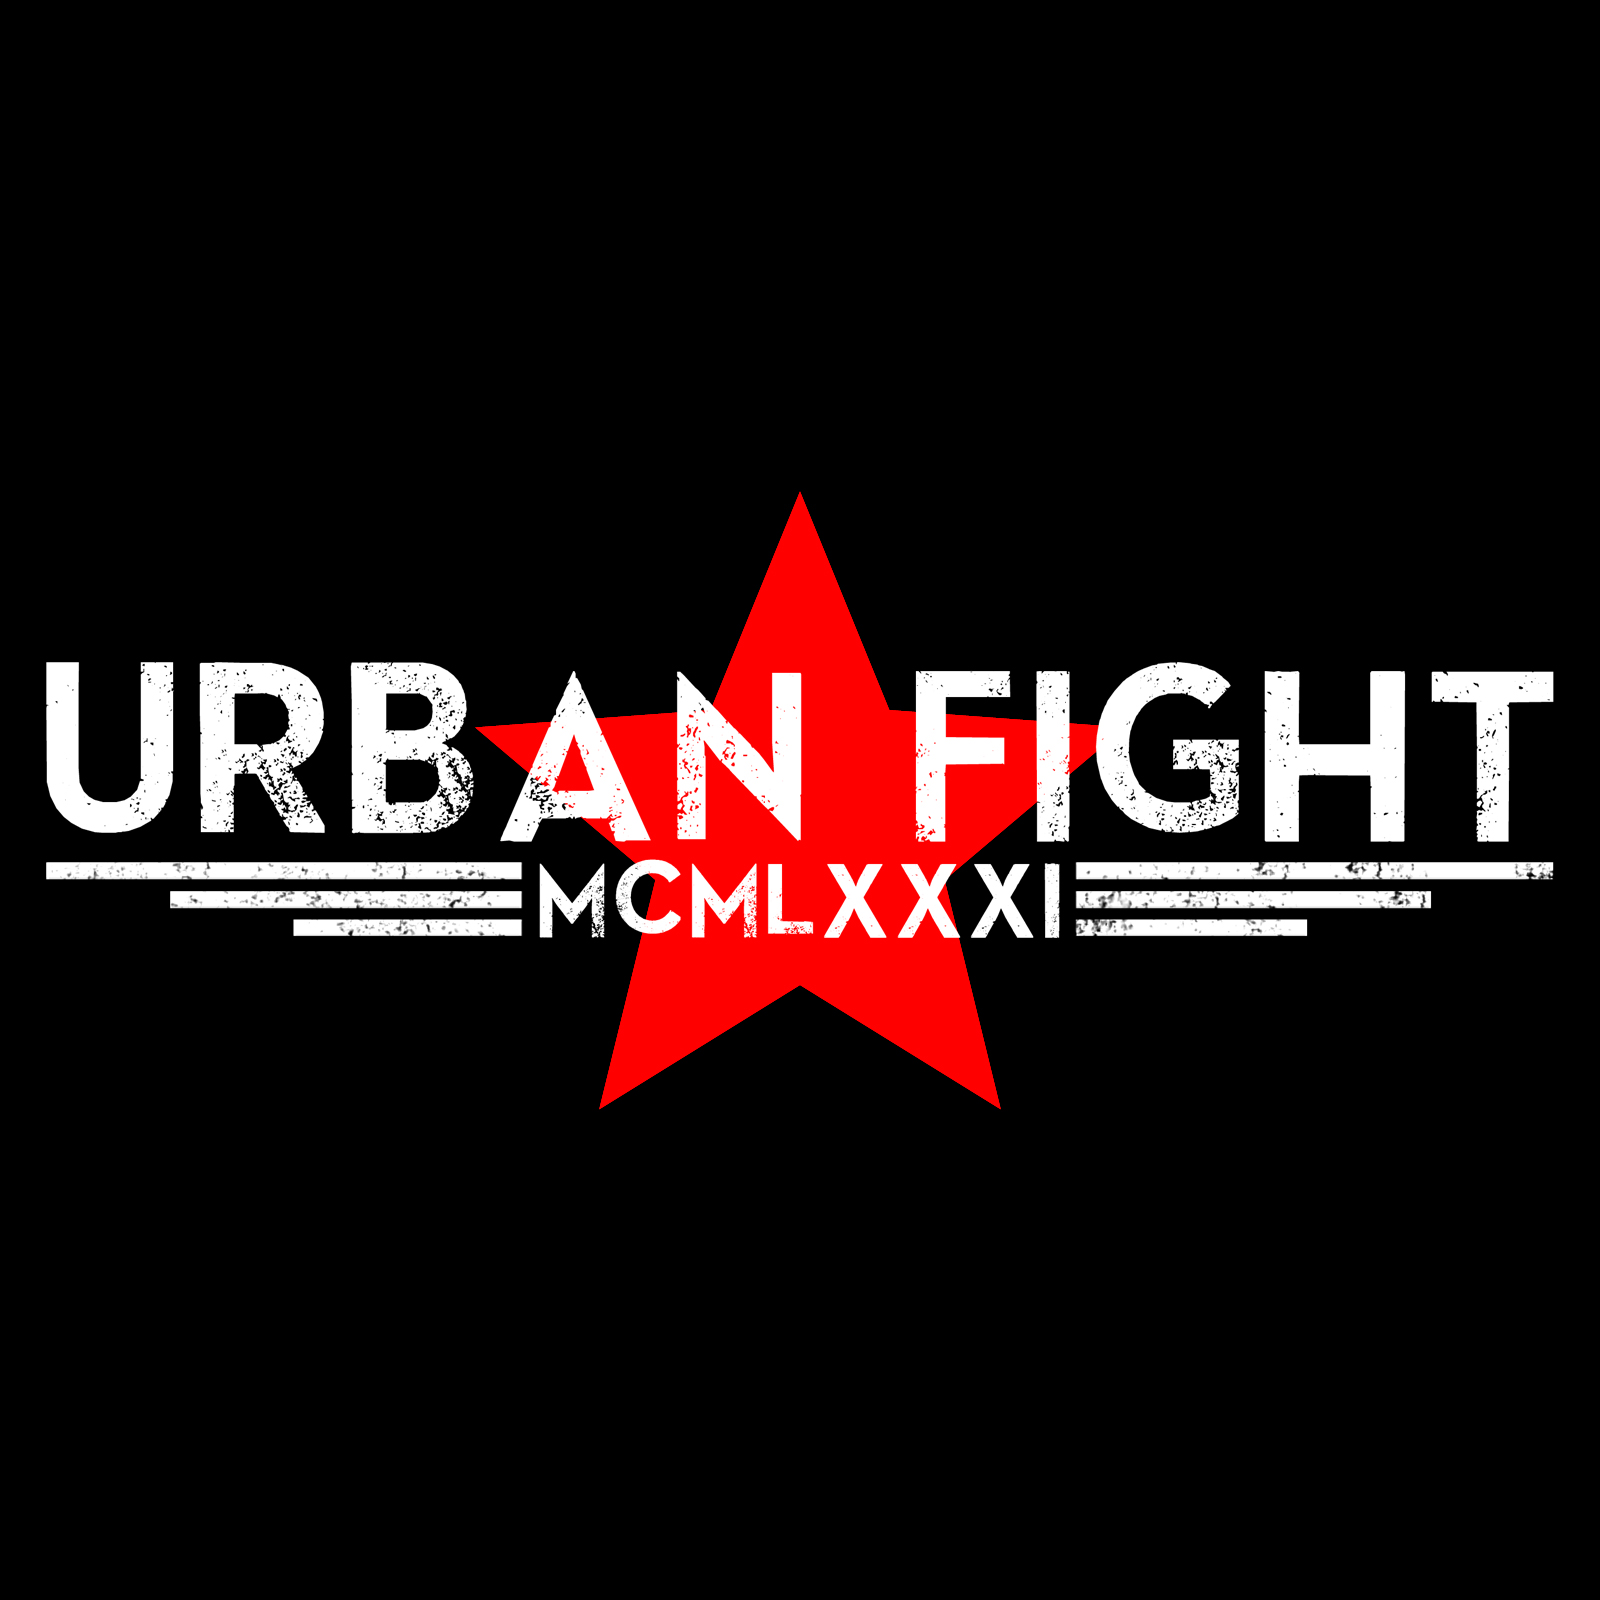 (c) Urbanfight.it